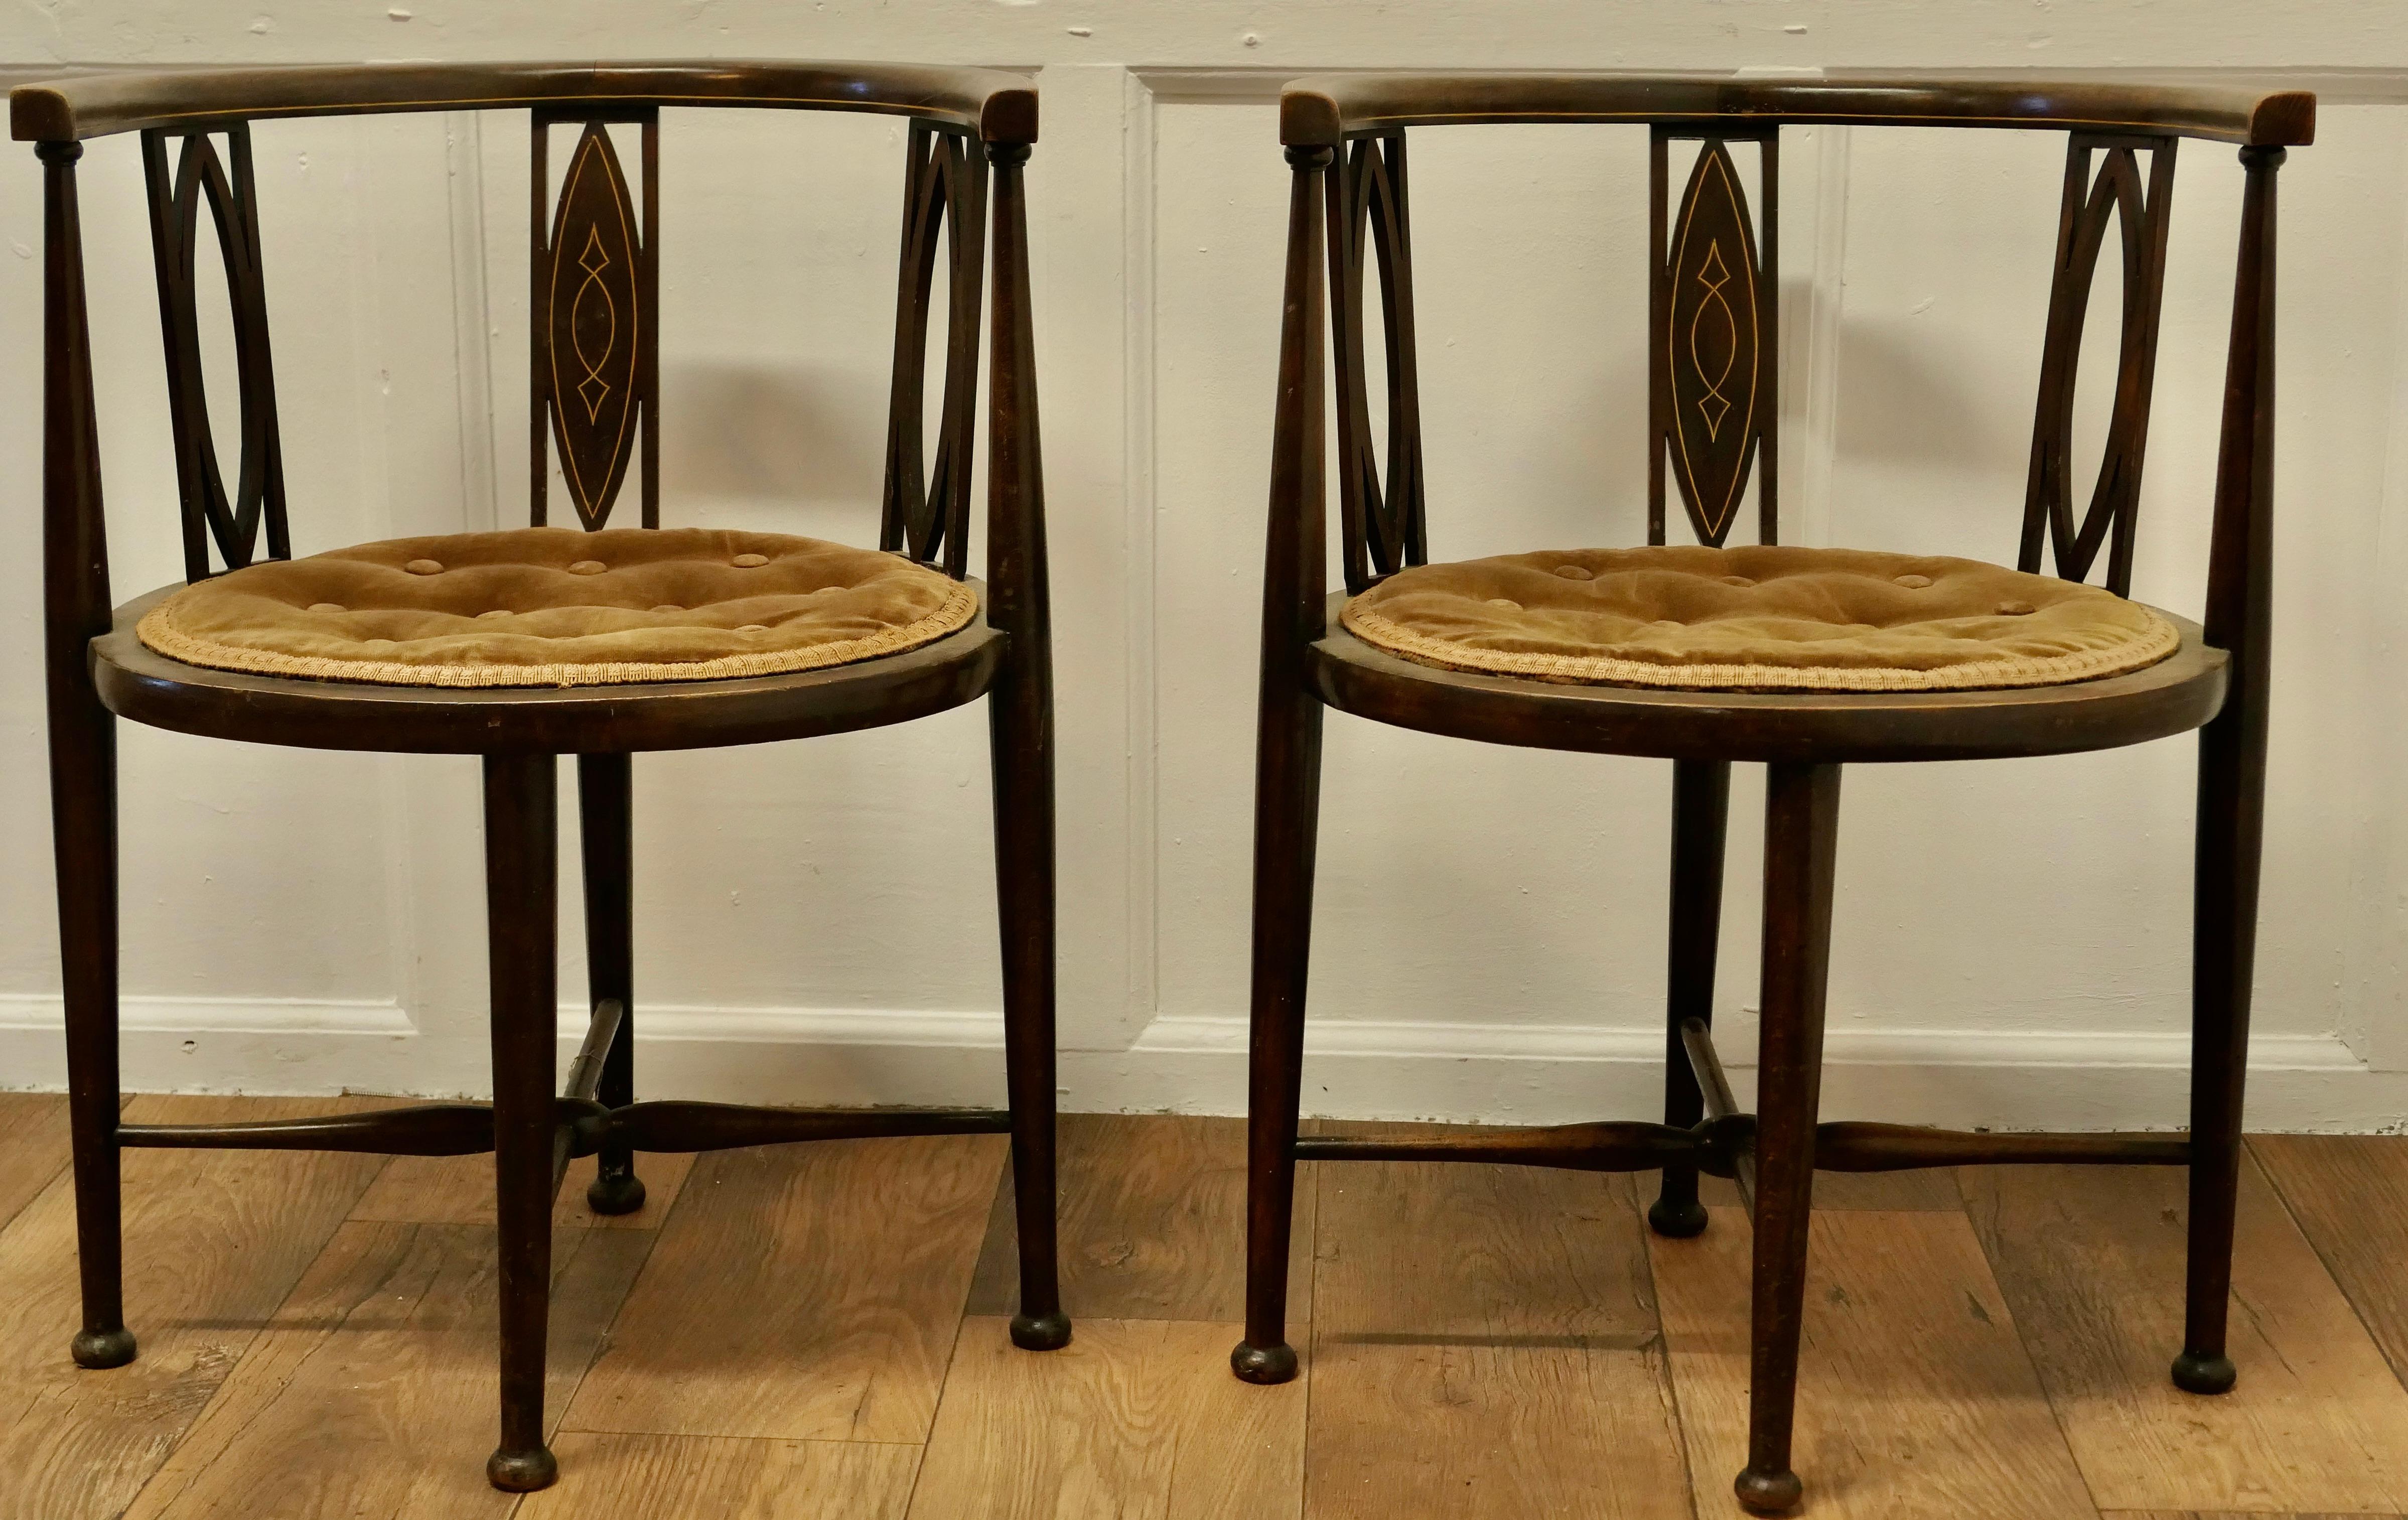 Ein Paar edwardianische runde Sessel

Ein schönes Paar Beistellstühle und eine sehr ungewöhnliche Form, die Sitze sind rund und die Rückenlehnen haben eine ovale Dekoration und Form, die Beine sind geformt und elegant mit x gestreckte Beine 
Die